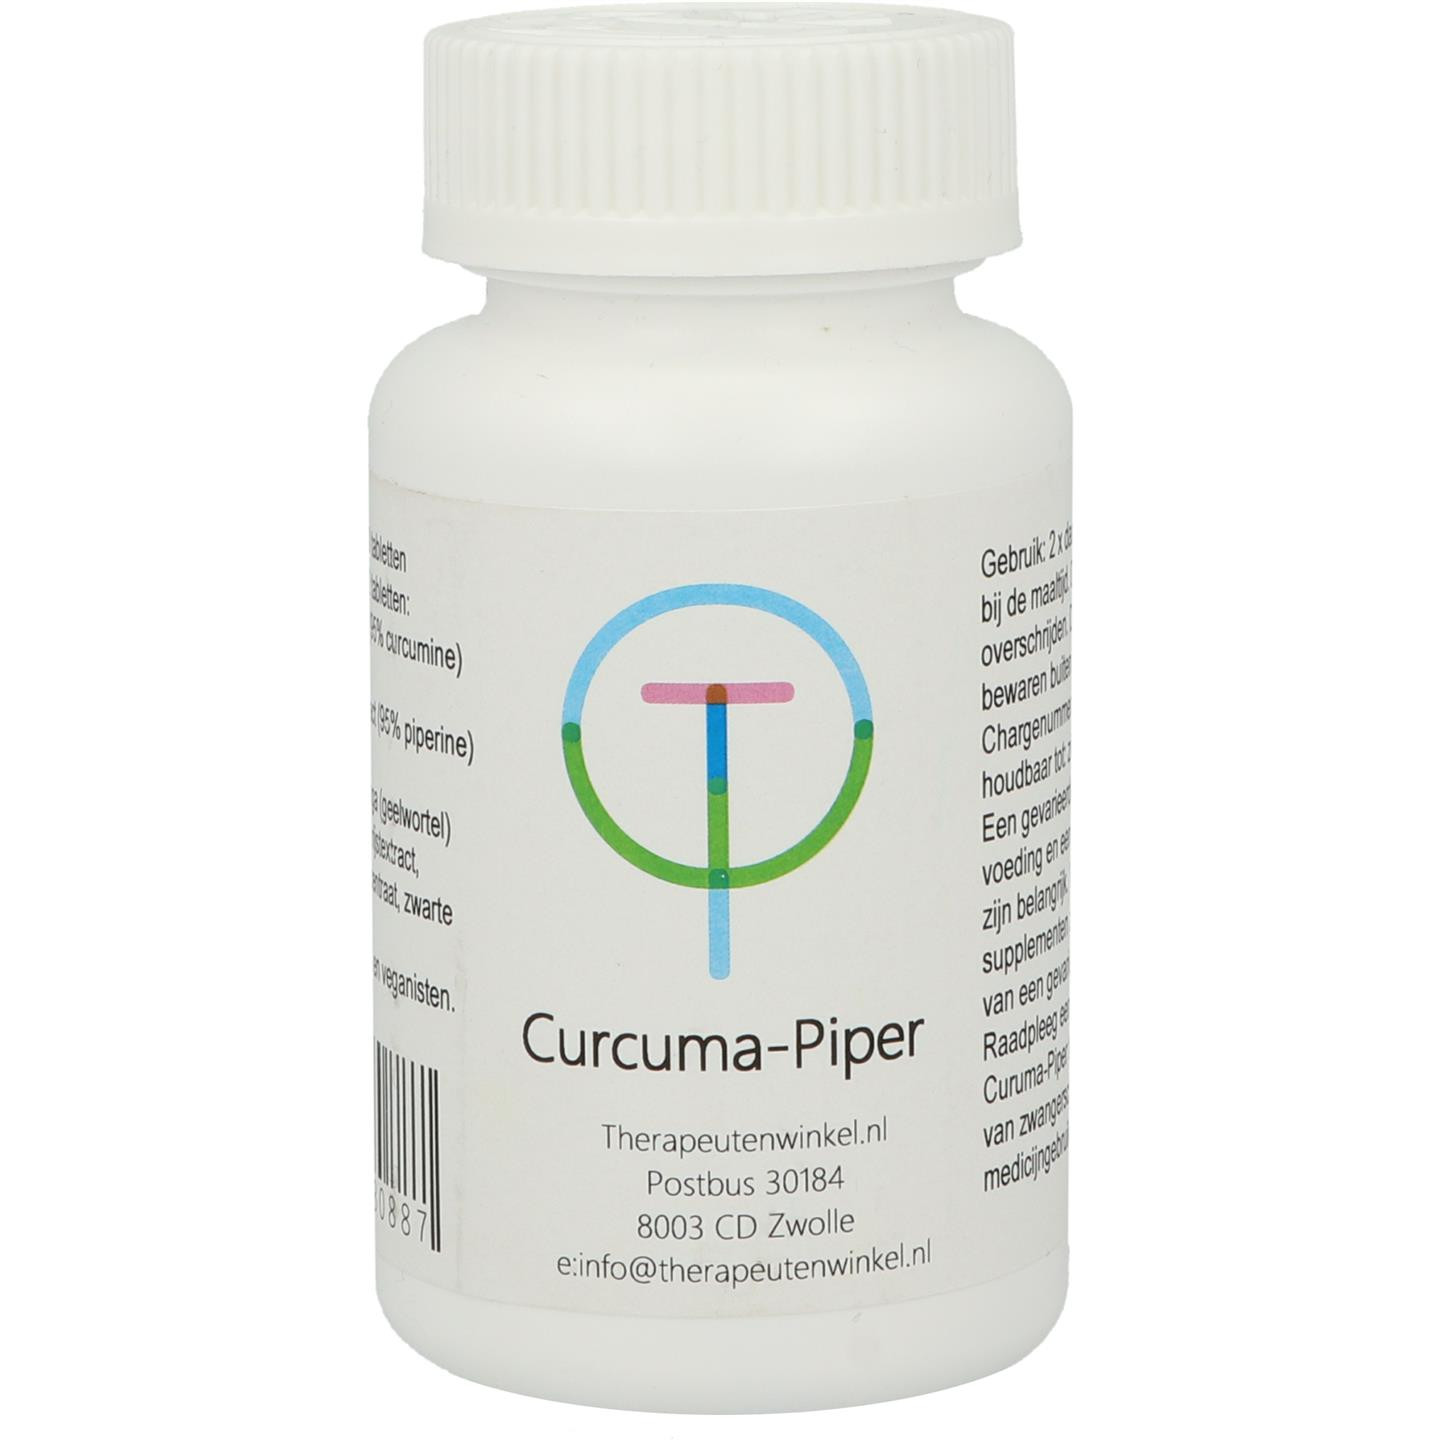 Curcuma-Piper